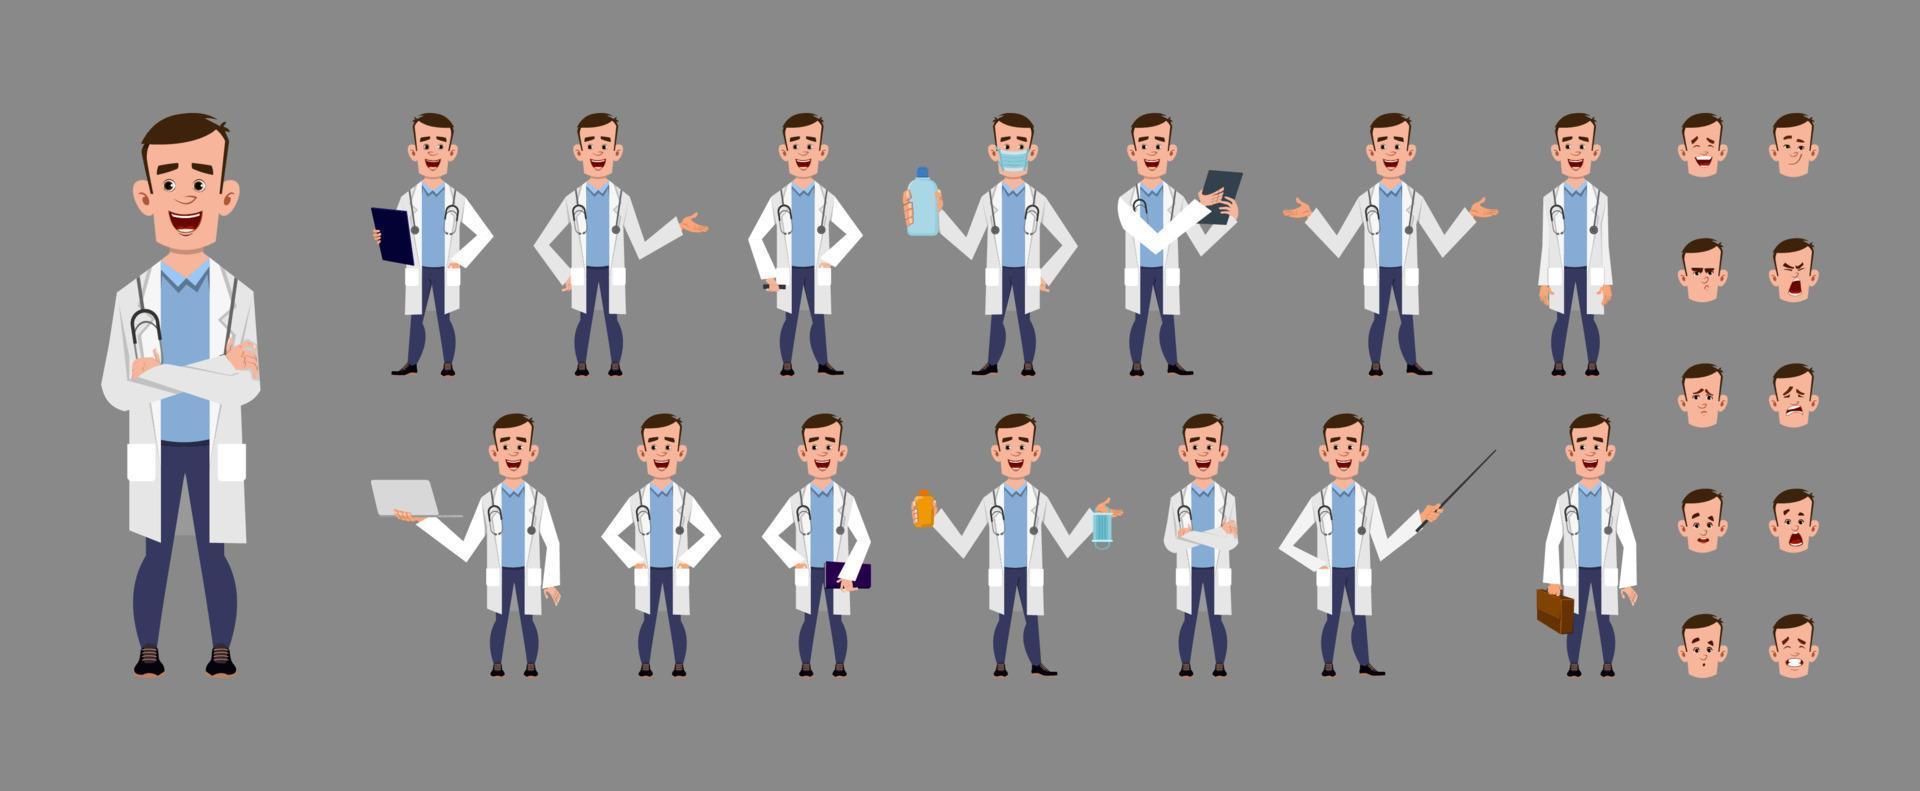 ung doktor seriefiguren. teckenuppsättning i olika poser eller gester vektor